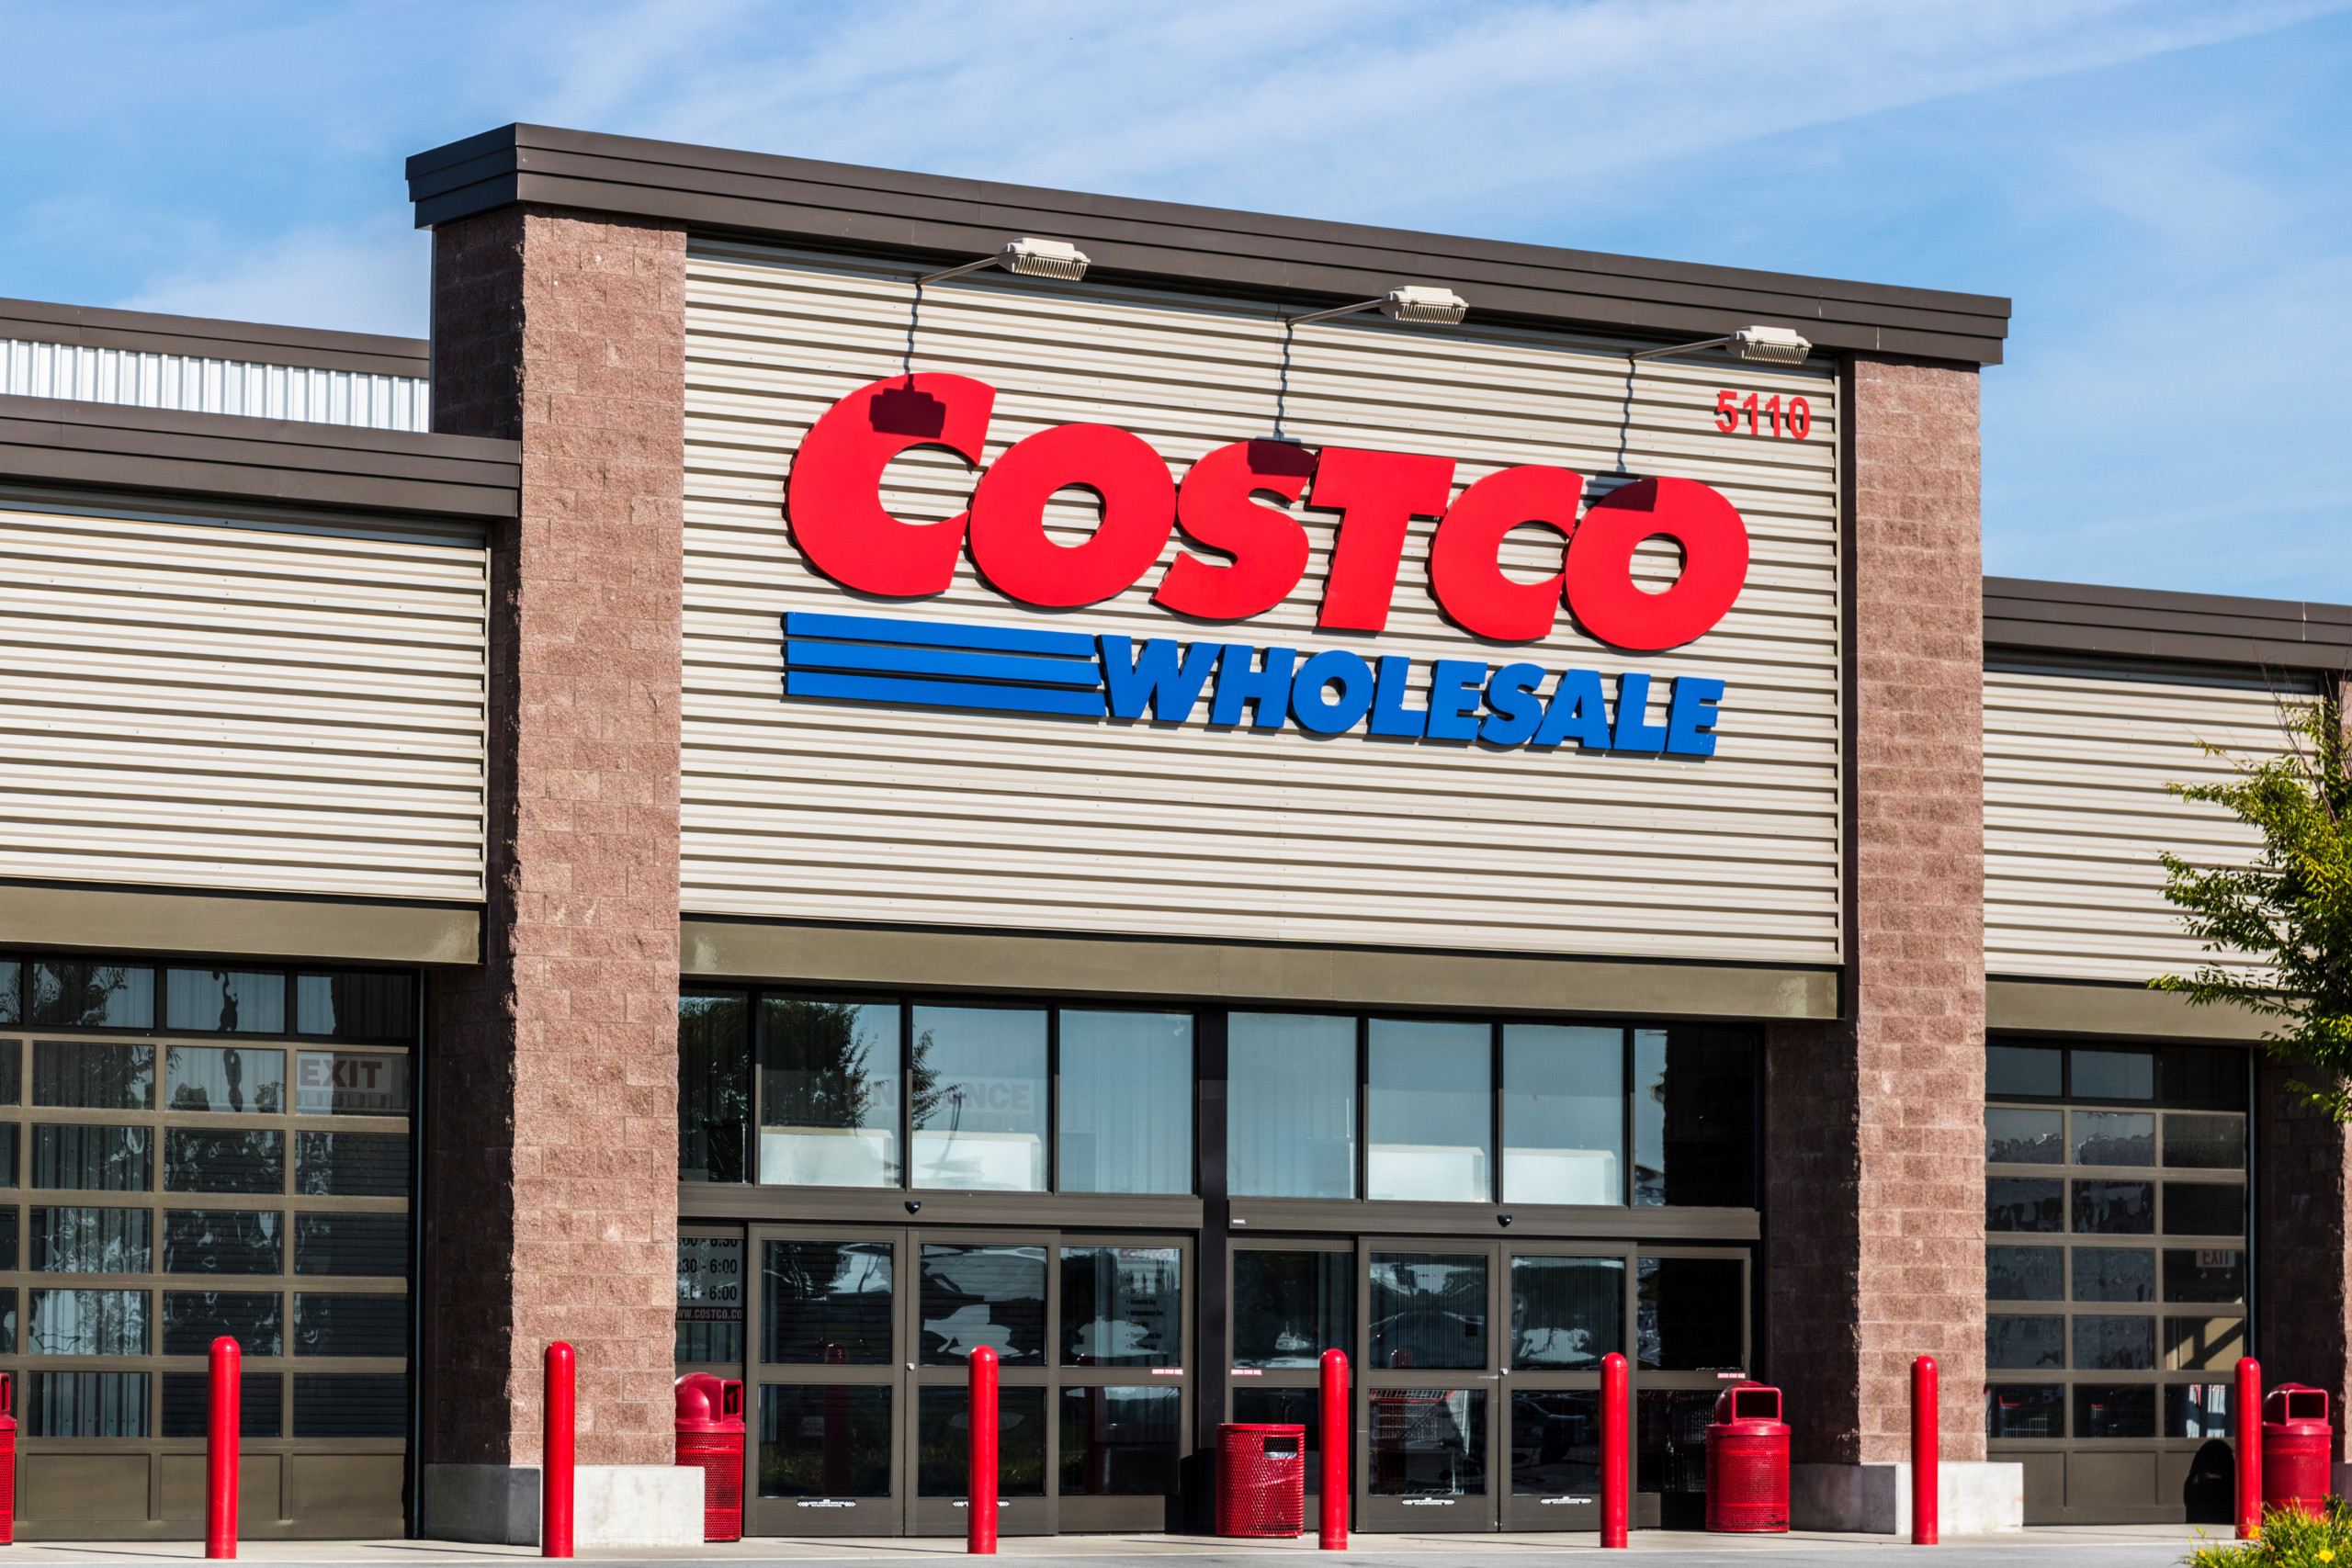 Costco: Knapp 40 % Kurssteigerung in 6 Monaten – Risiko für einen Rückschlag?